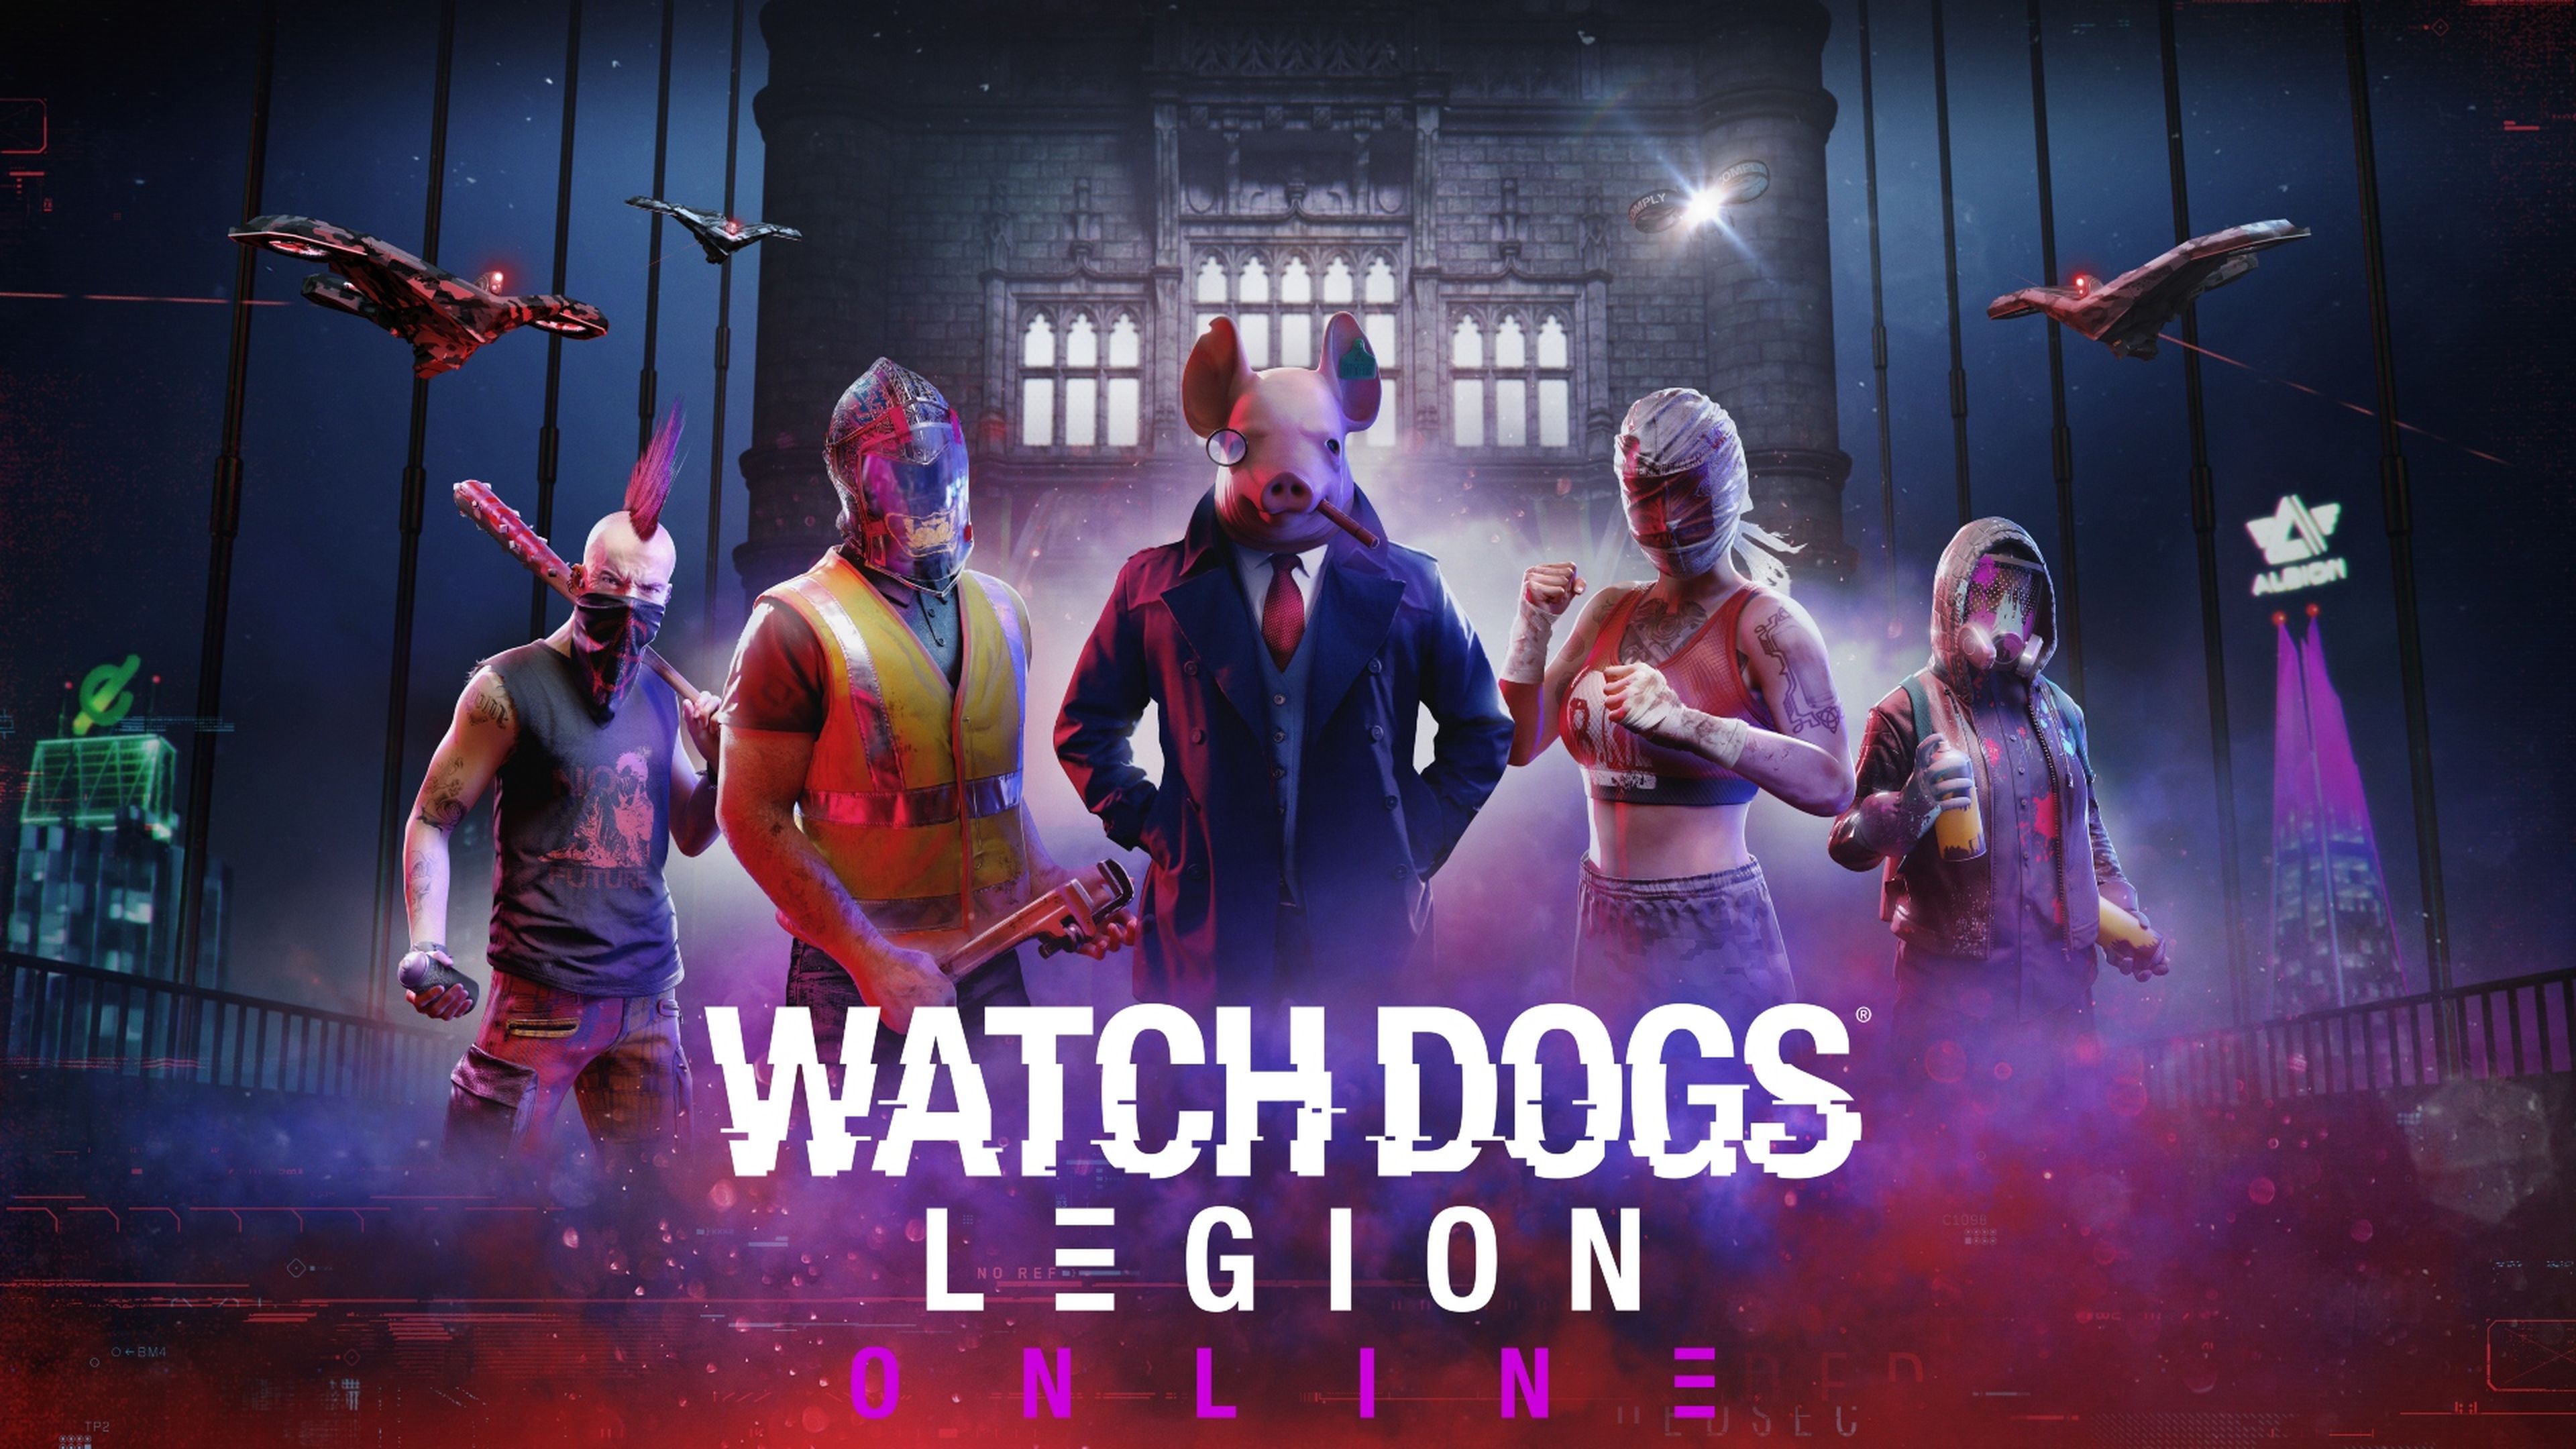 Prévia  Modo online de Watch Dogs Legion repete erros, mas com